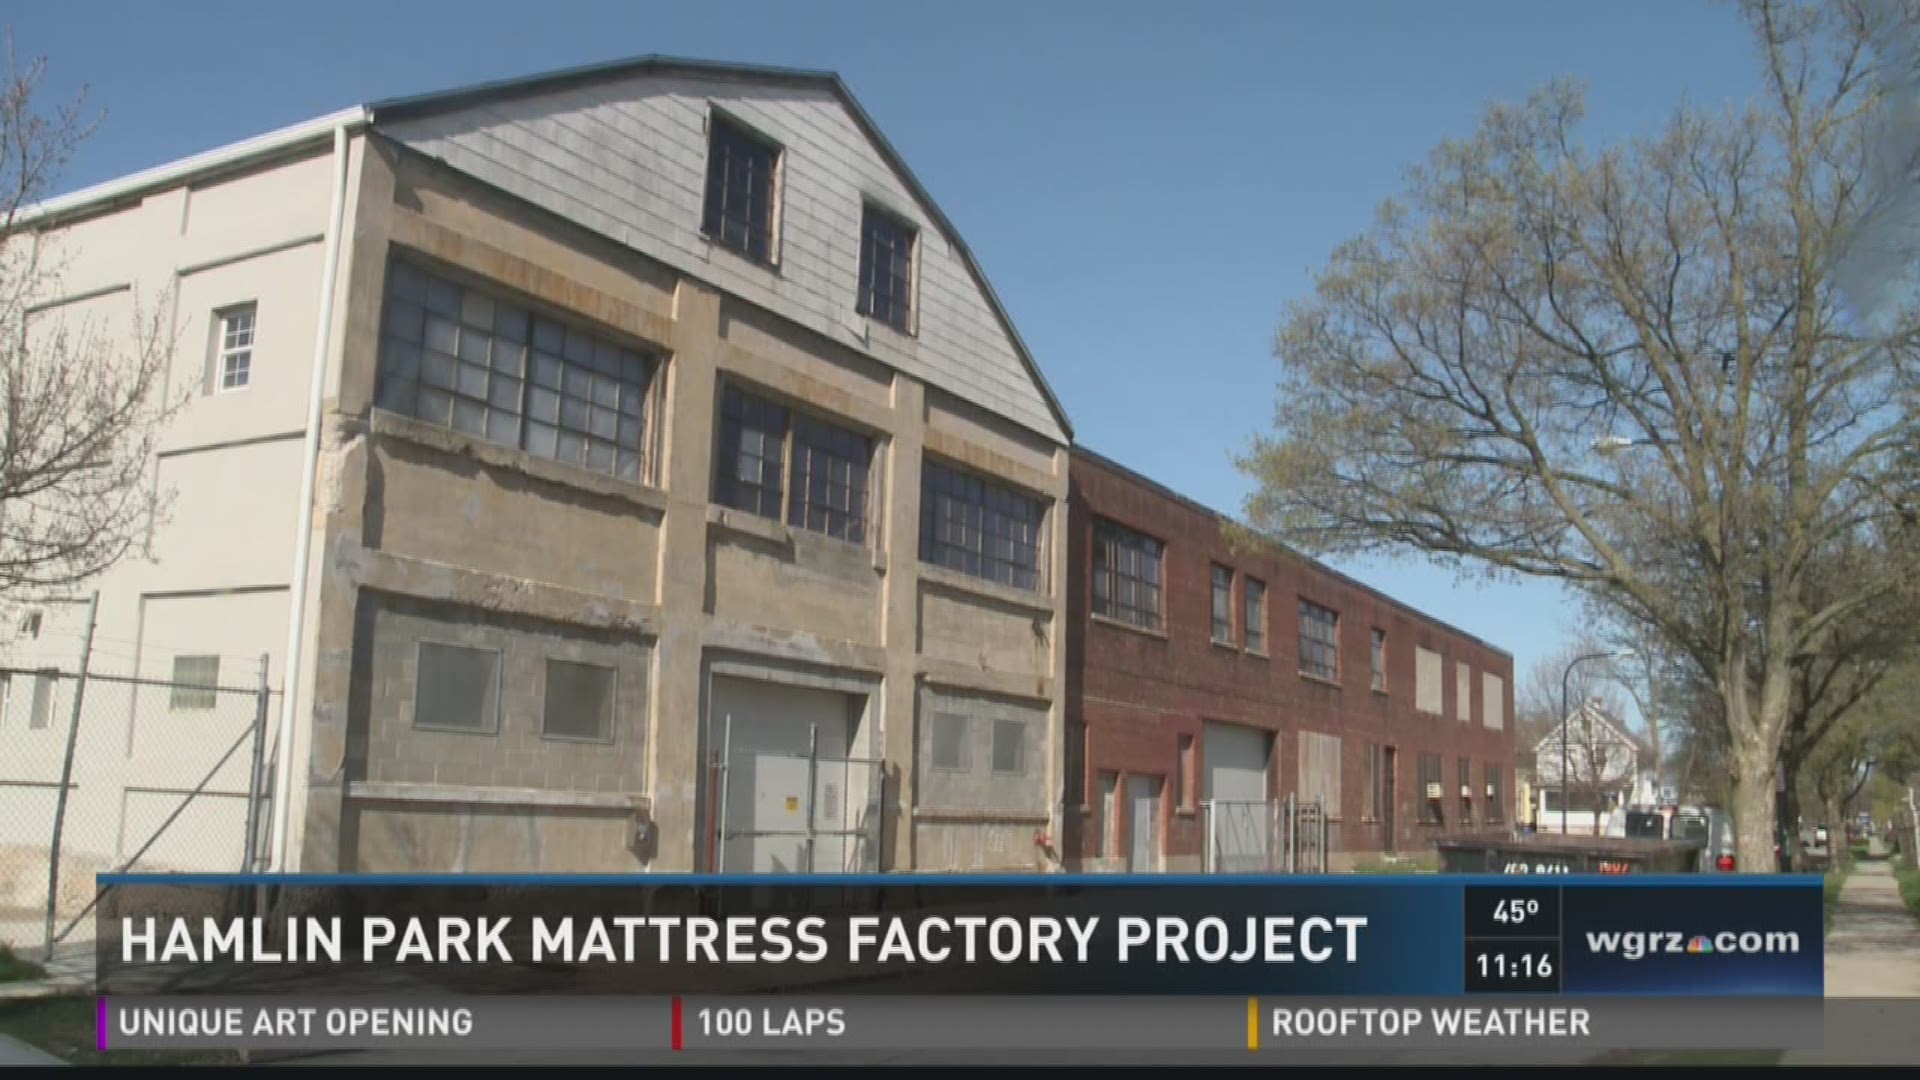 Hamlin Park Mattress Factory Project